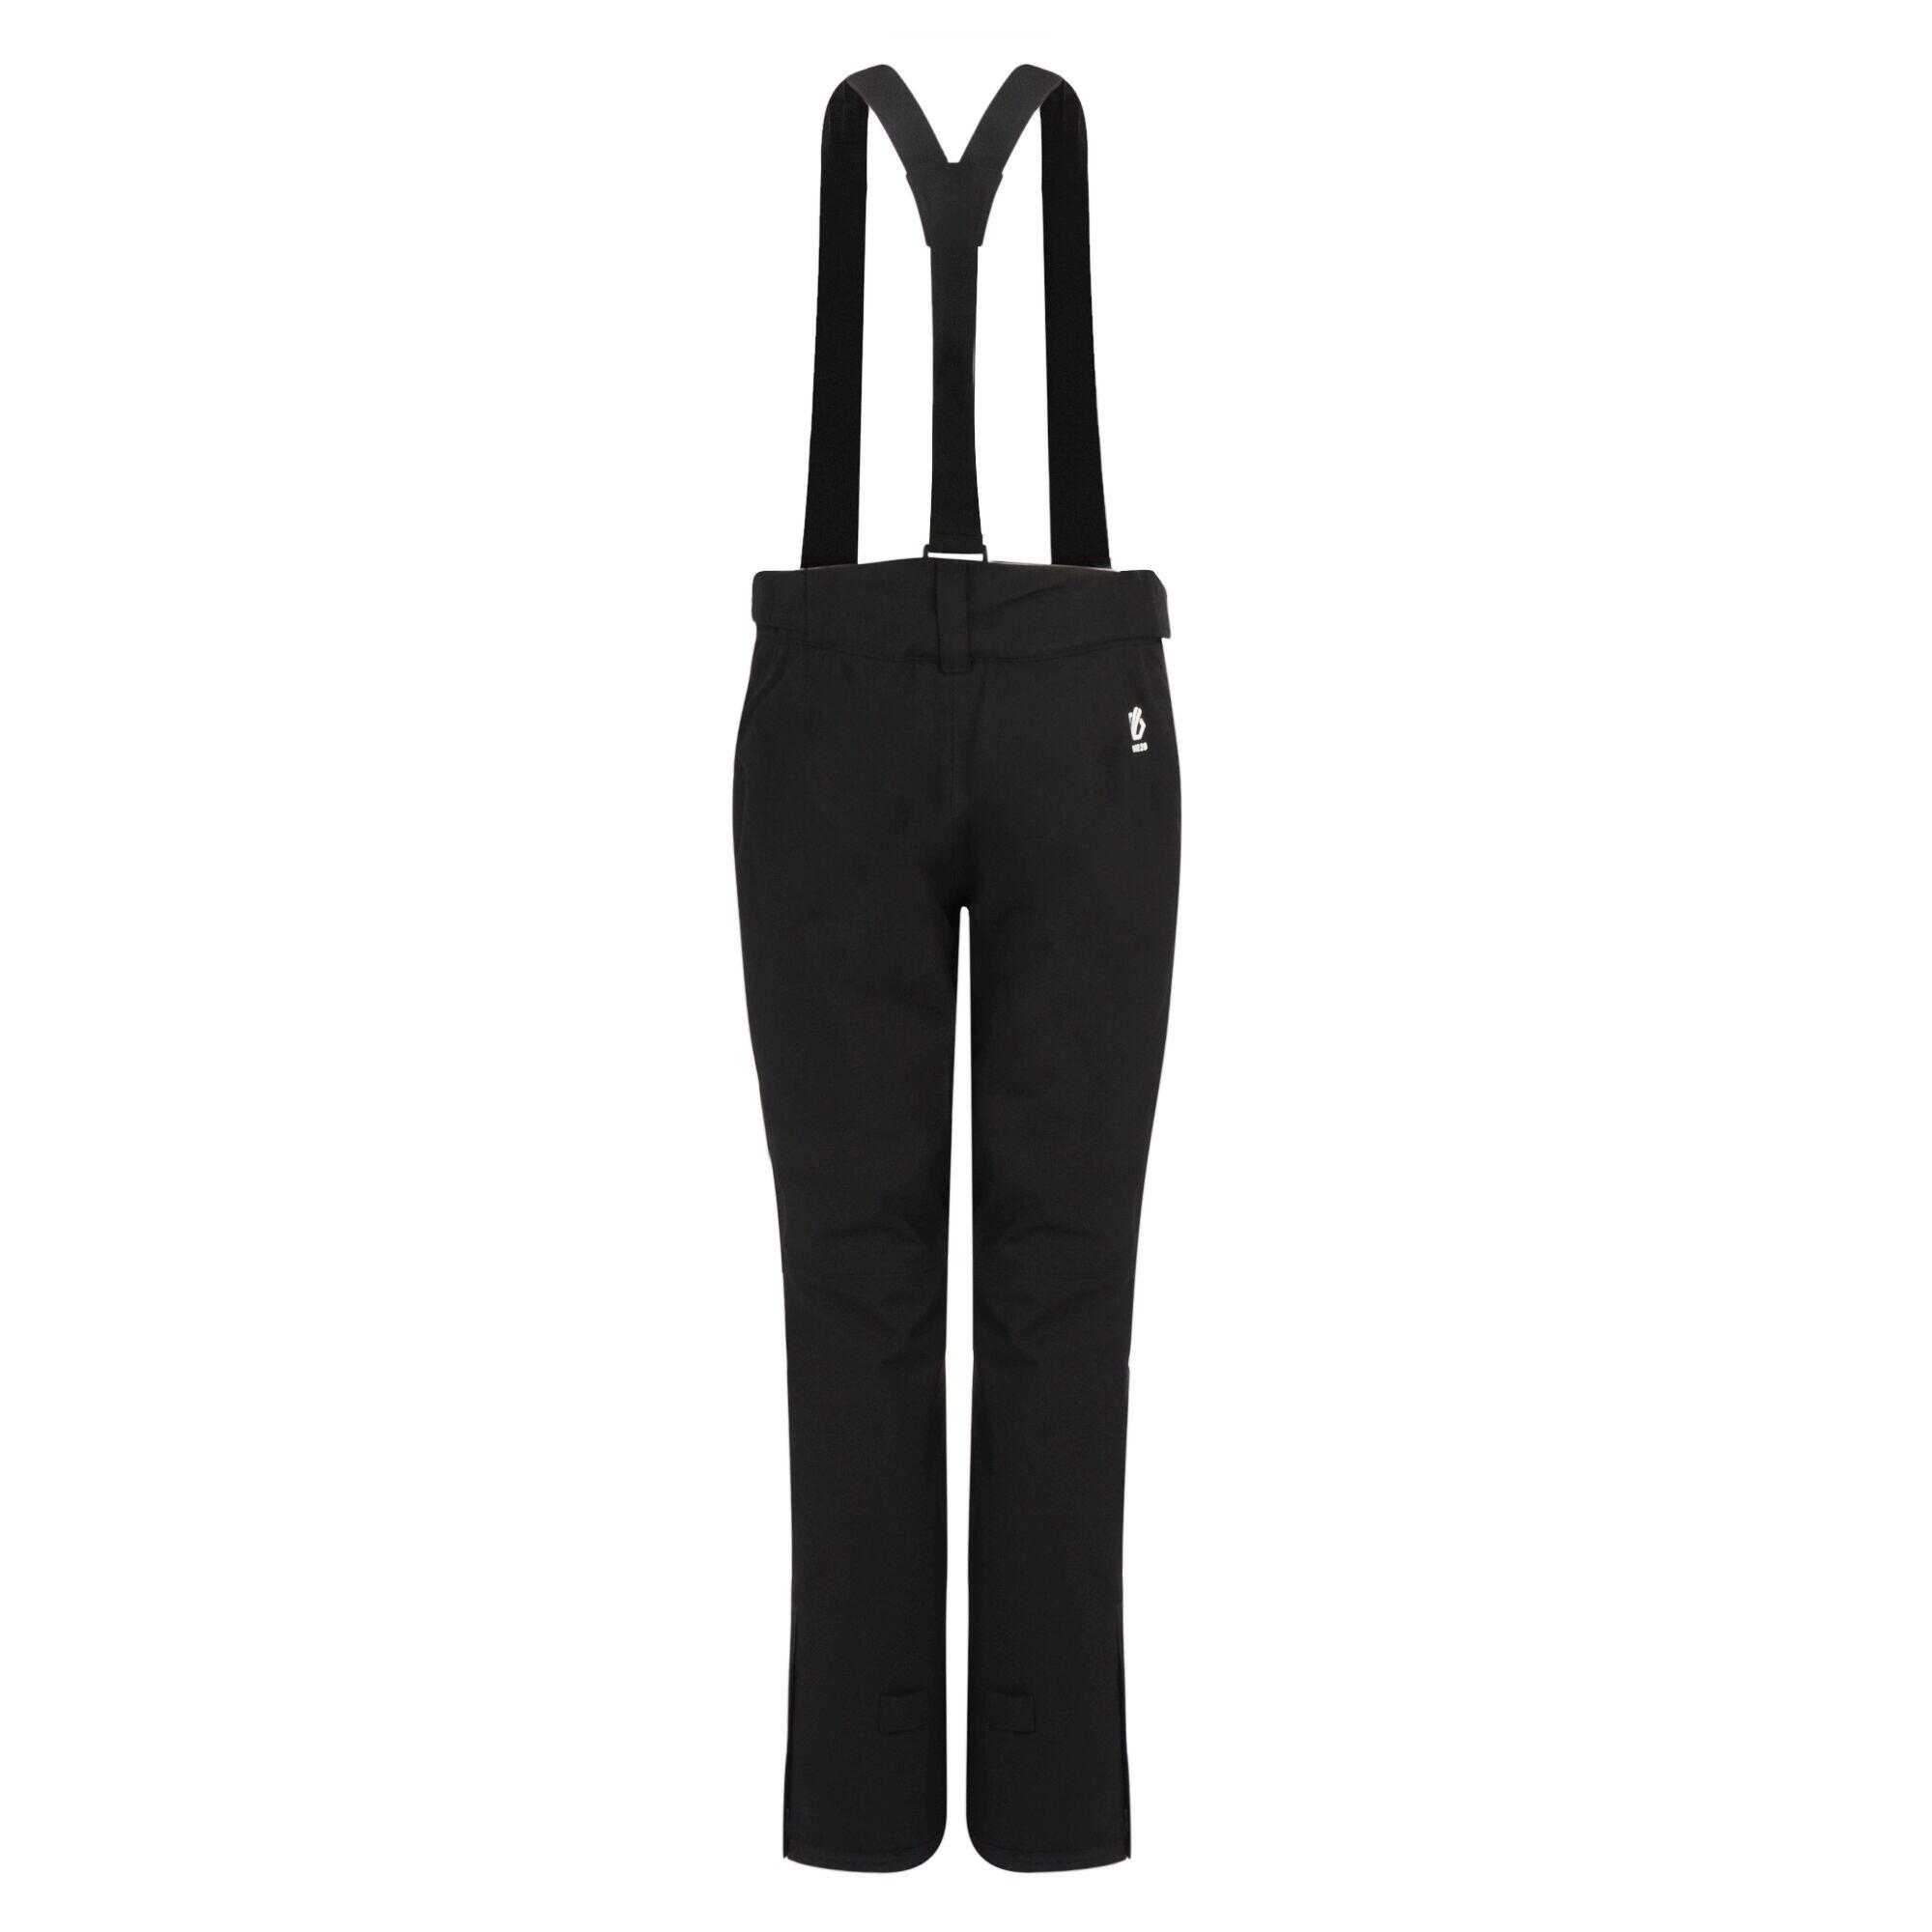 Diminish Women's Ski Pants - Black 3/7